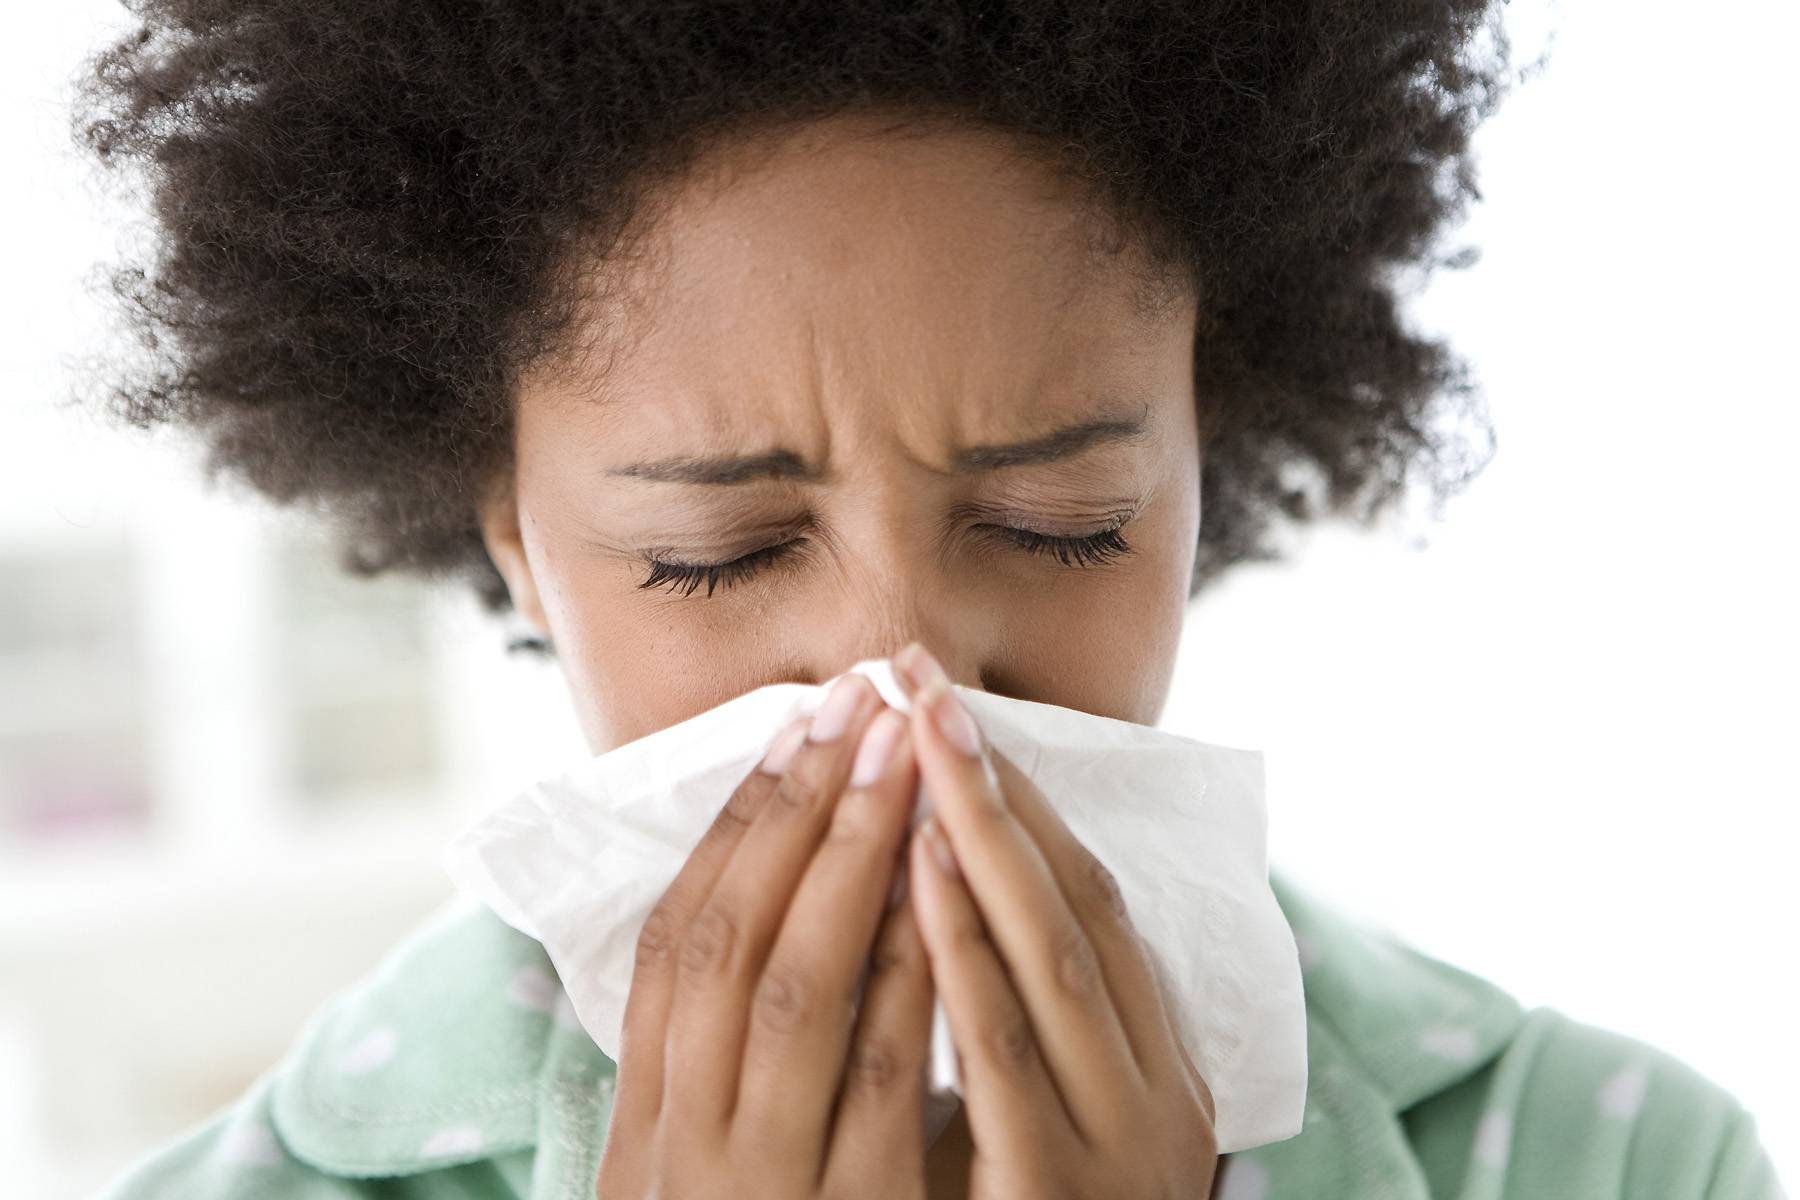 Polar Vortex Brings in “Pollen Vortex” This Allergy Season